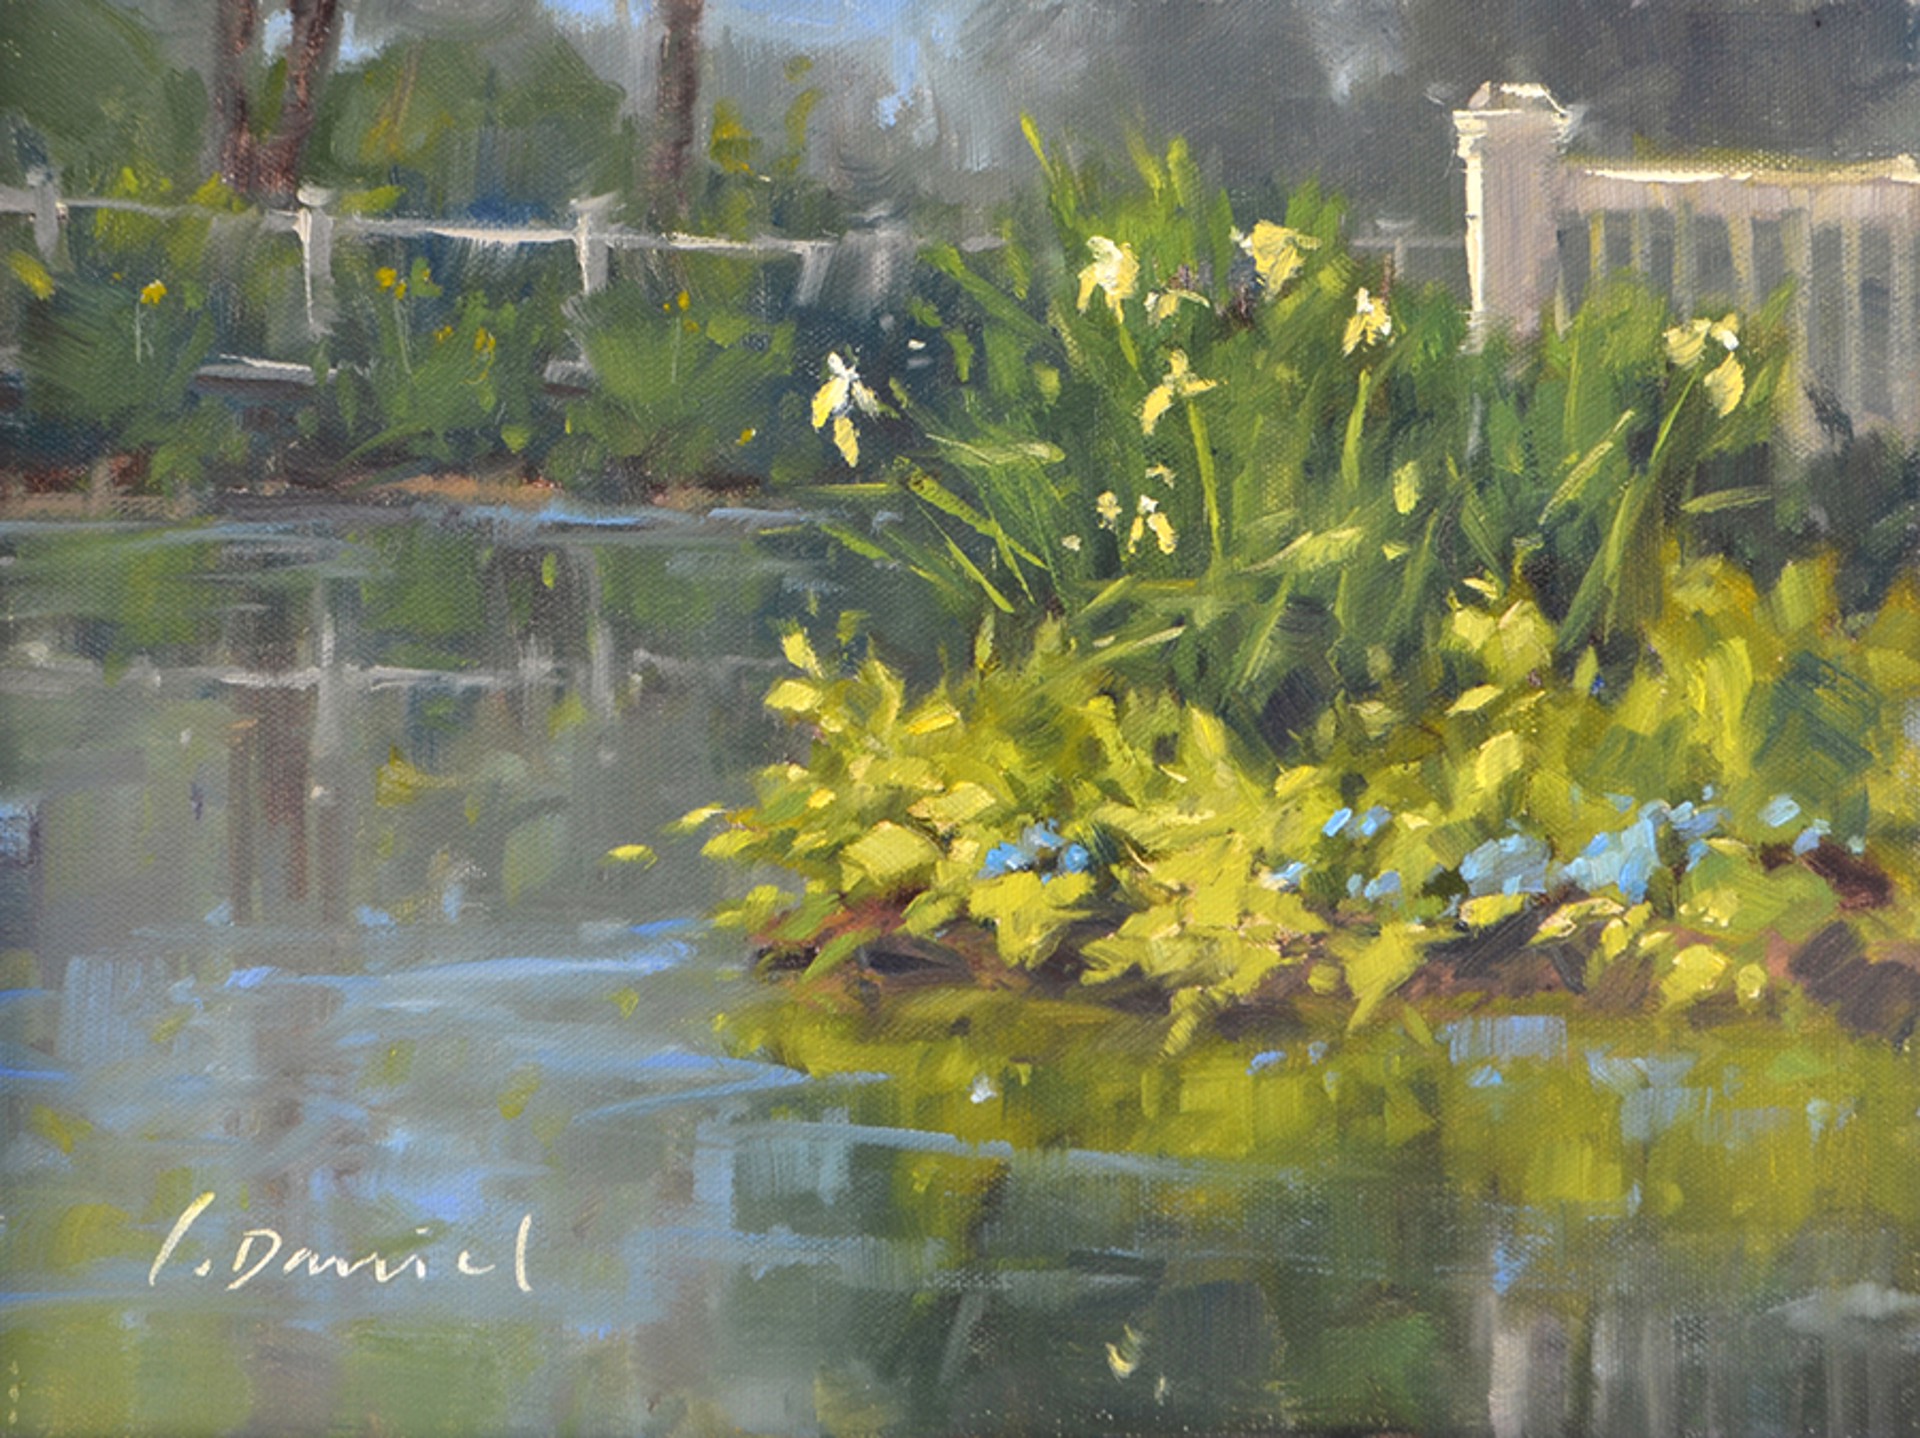 Garden Pond Reflection by Laurel Daniel